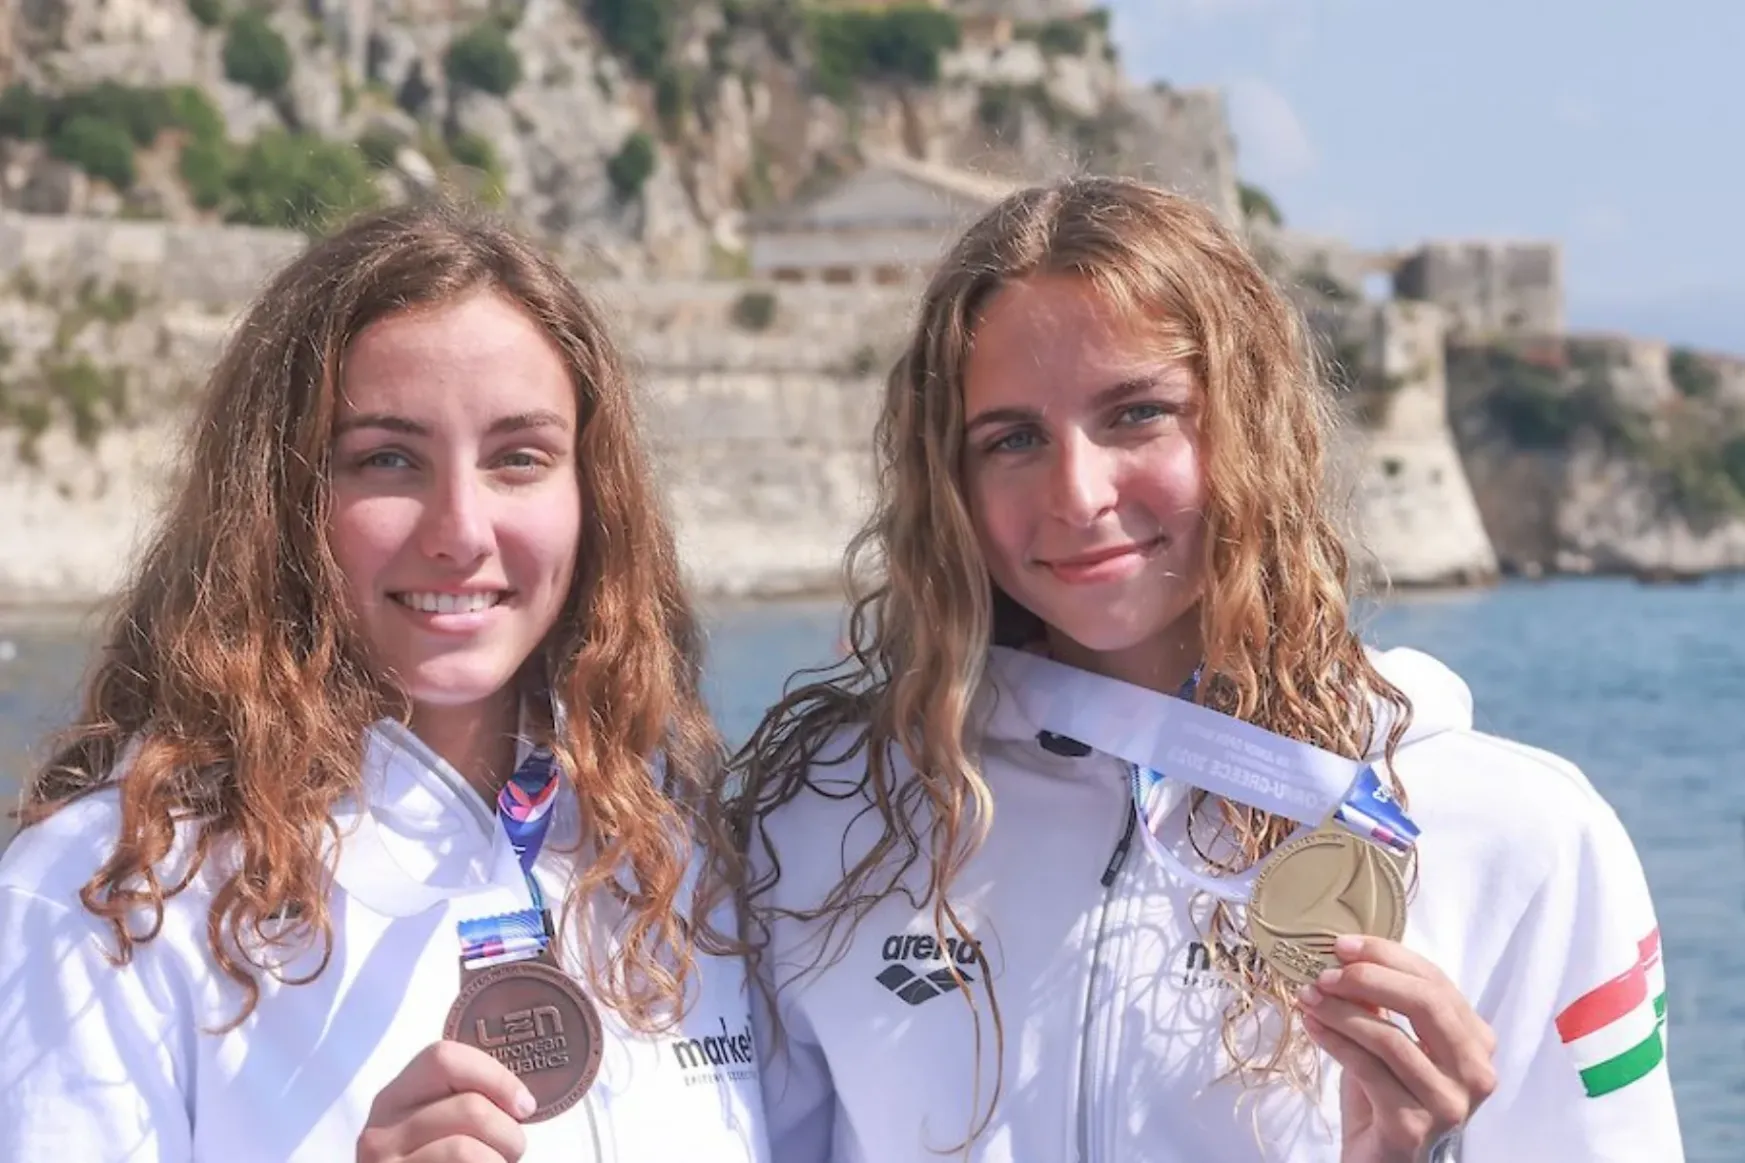 Ifjúsági Európa-bajnok lett a nyílt vízi úszó Fábián Bettina